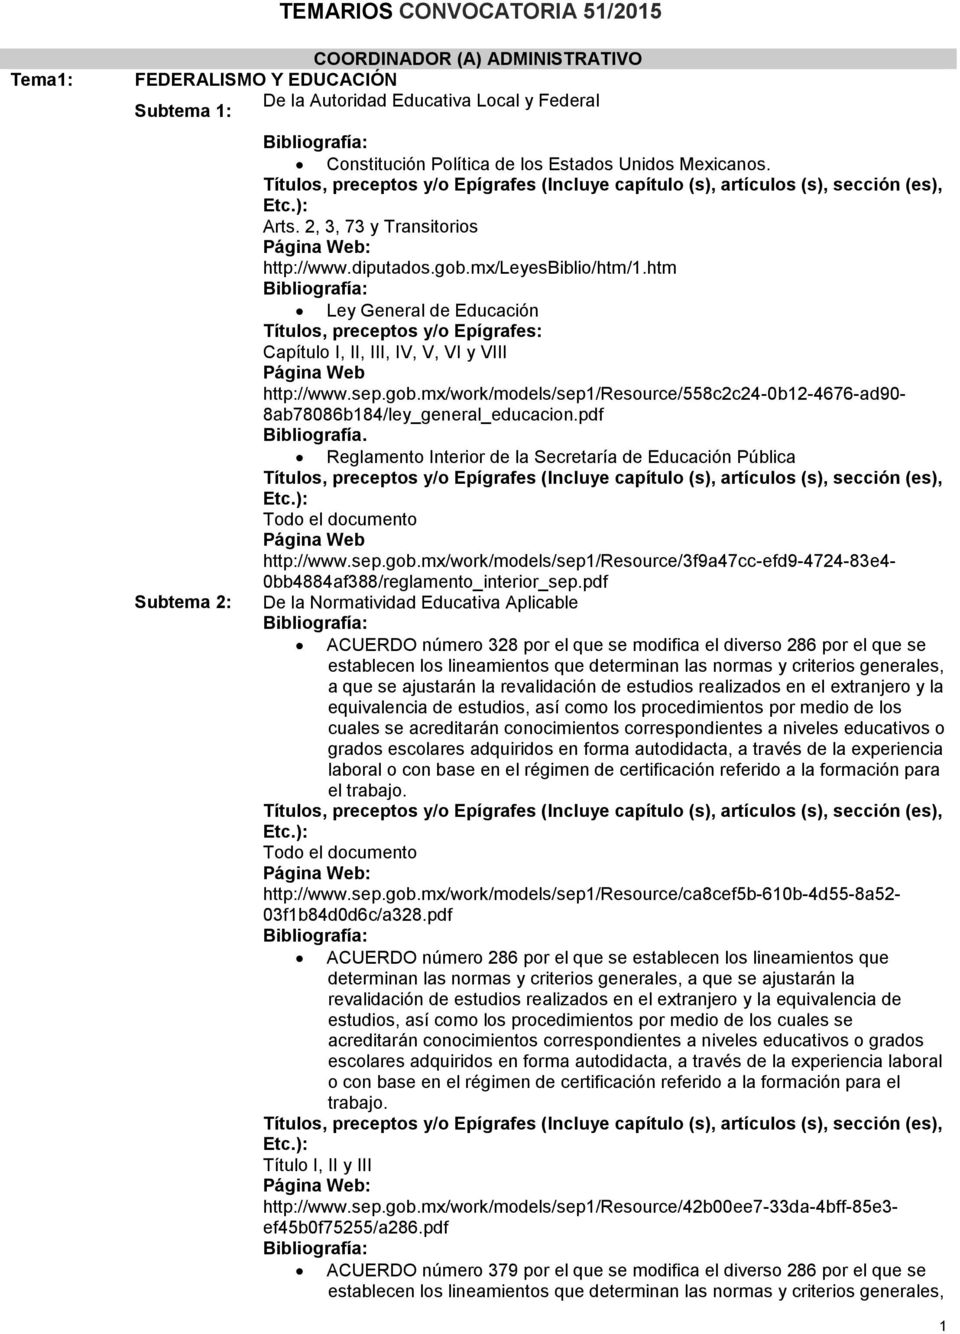 sep.gob.mx/work/models/sep1/resource/558c2c24-0b12-4676-ad90-8ab78086b184/ley_general_educacion.pdf Reglamento Interior de la Secretaría de Educación Pública http://www.sep.gob.mx/work/models/sep1/resource/3f9a47cc-efd9-4724-83e4-0bb4884af388/reglamento_interior_sep.